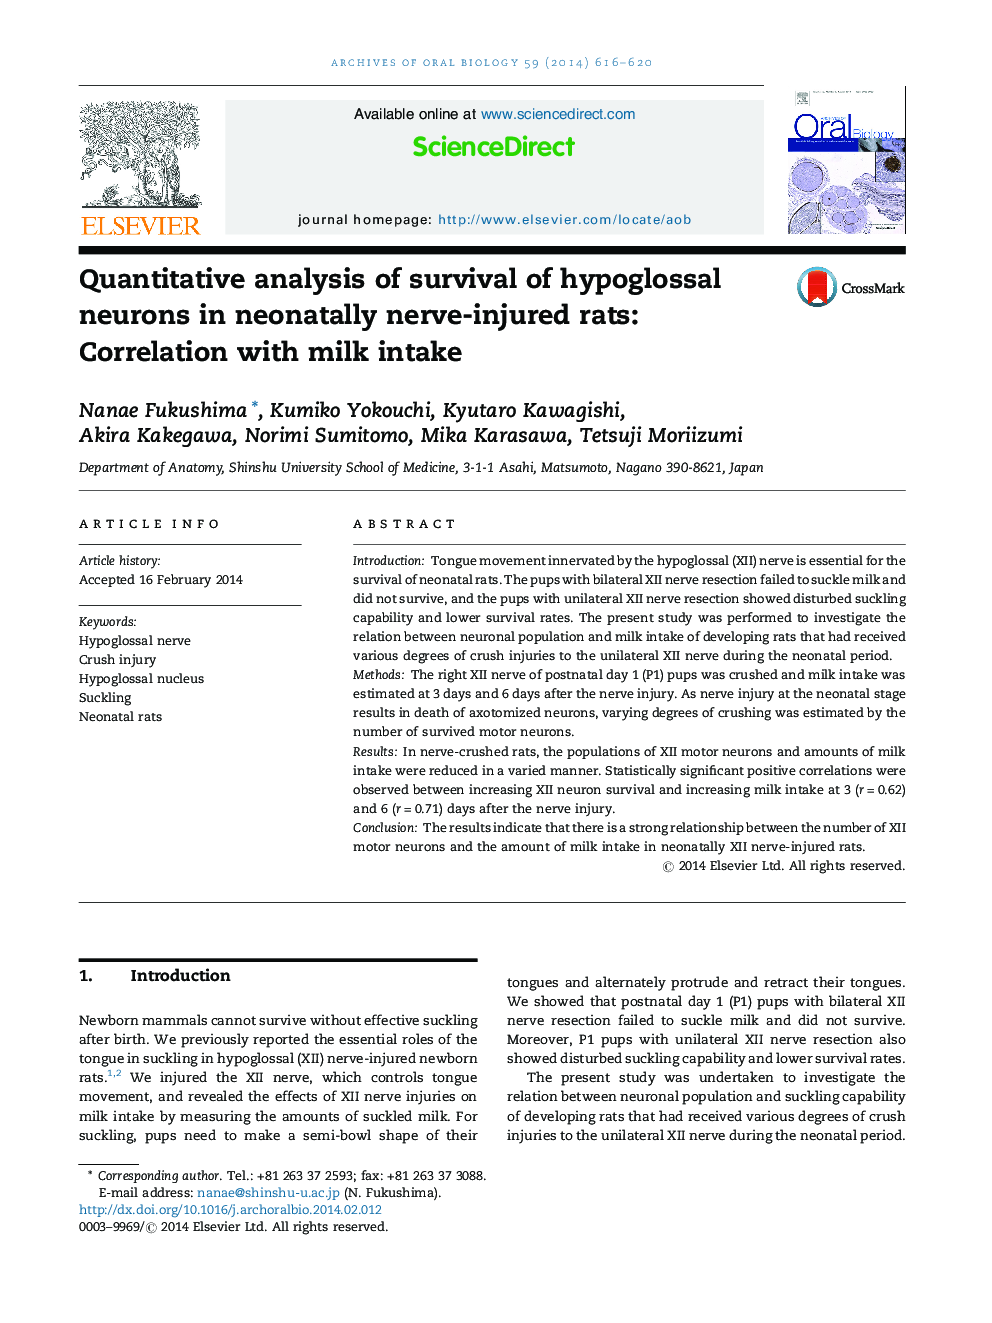 تجزیه و تحلیل کمی از بقاء نورون های هیپوگلوزالی در موش های صحرایی نابارور عصبی: همبستگی با مصرف شیر 